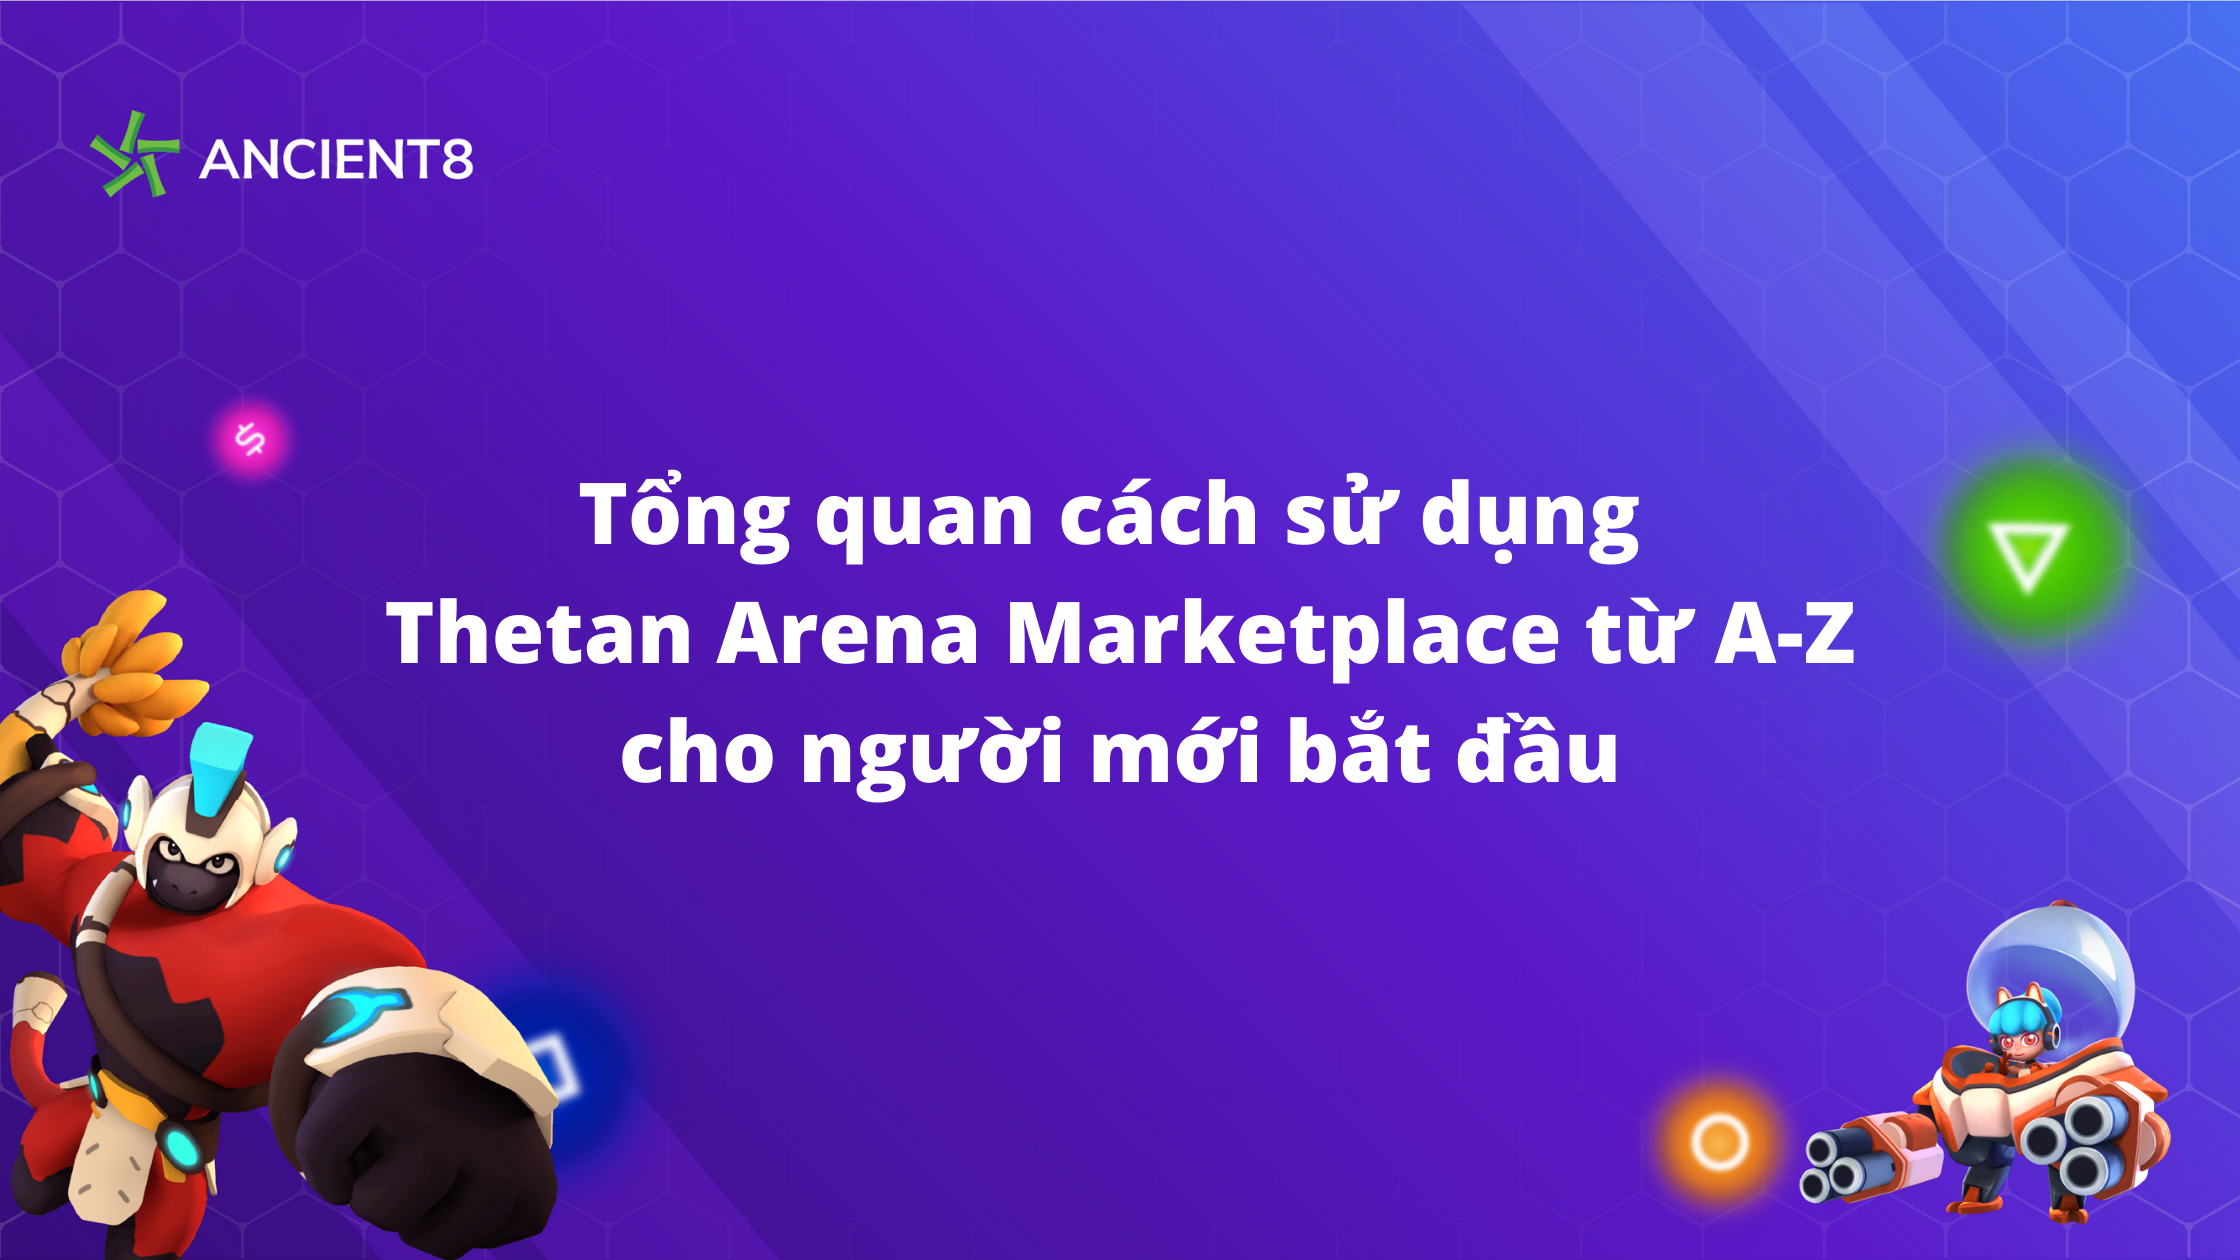 Tổng quan cách sử dụng Thetan Arena Marketplace từ A-Z cho người mới bắt đầu